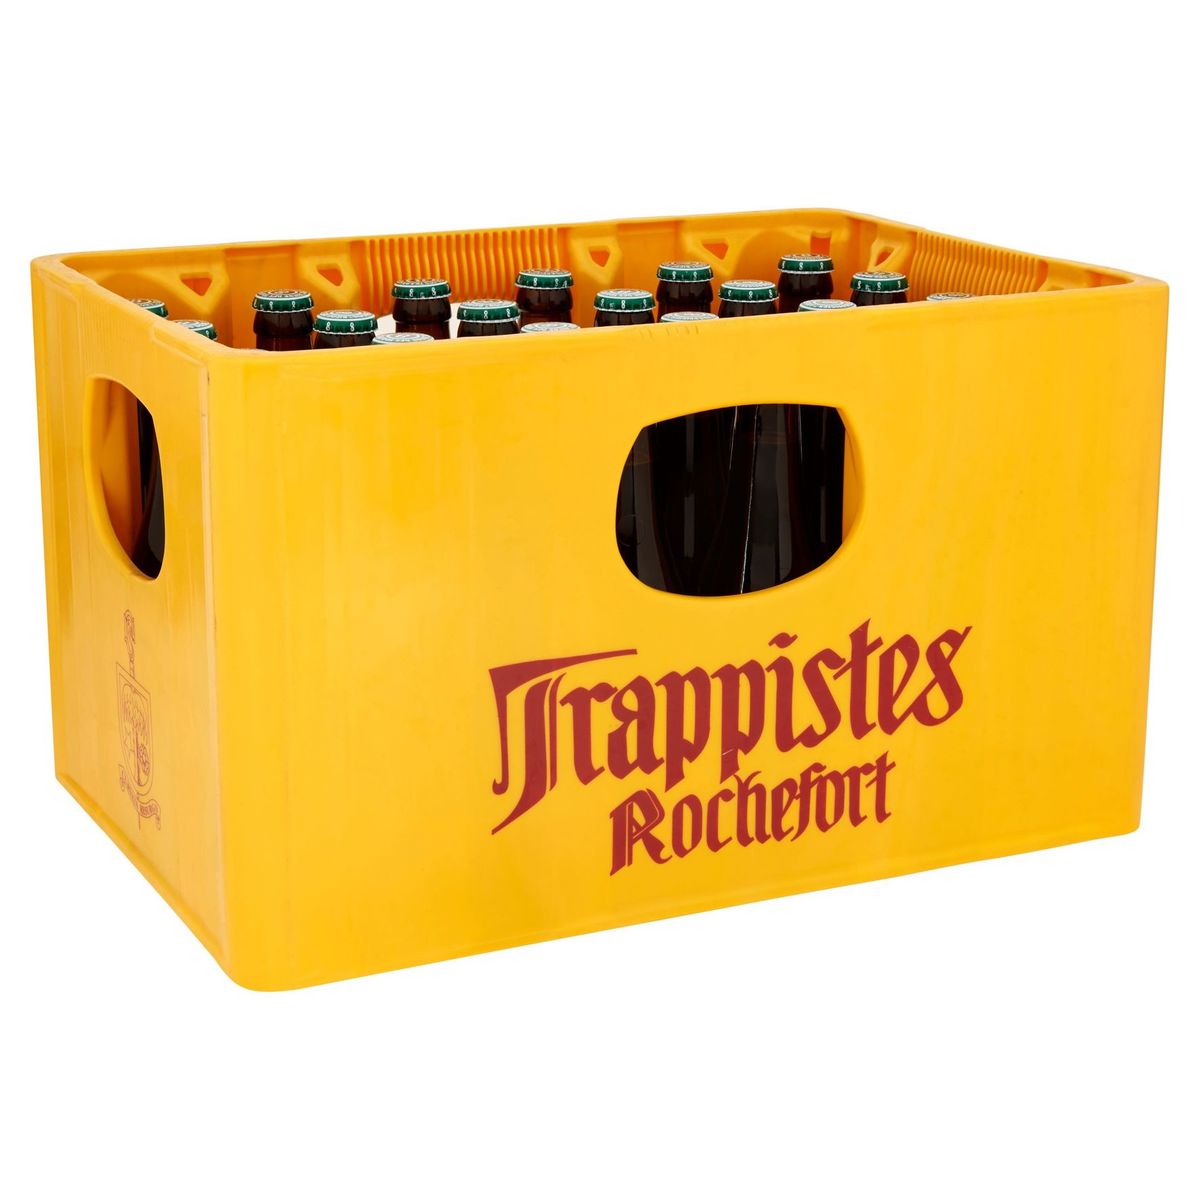 Trappistes Rochefort 8 Bier Krat 24 x 33 cl